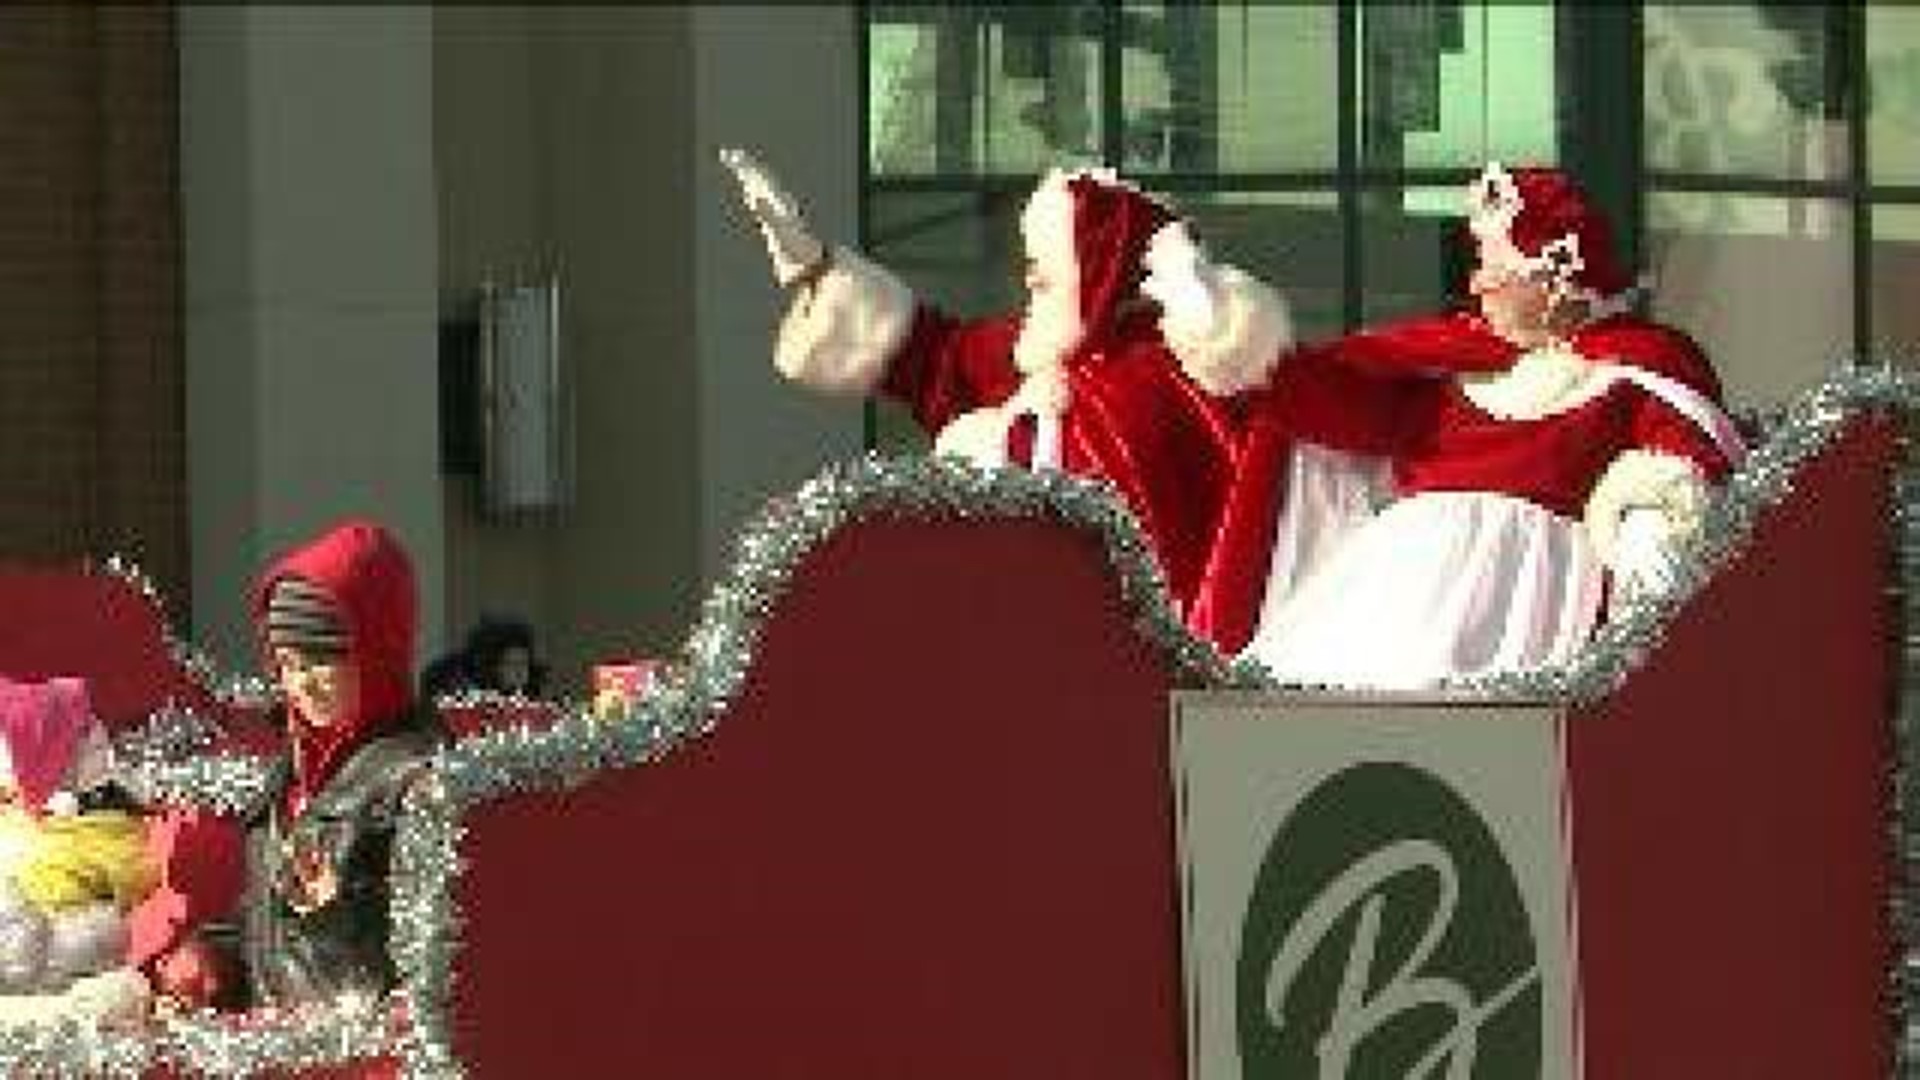 Annual Santa Parade Set to Kickoff in Scranton